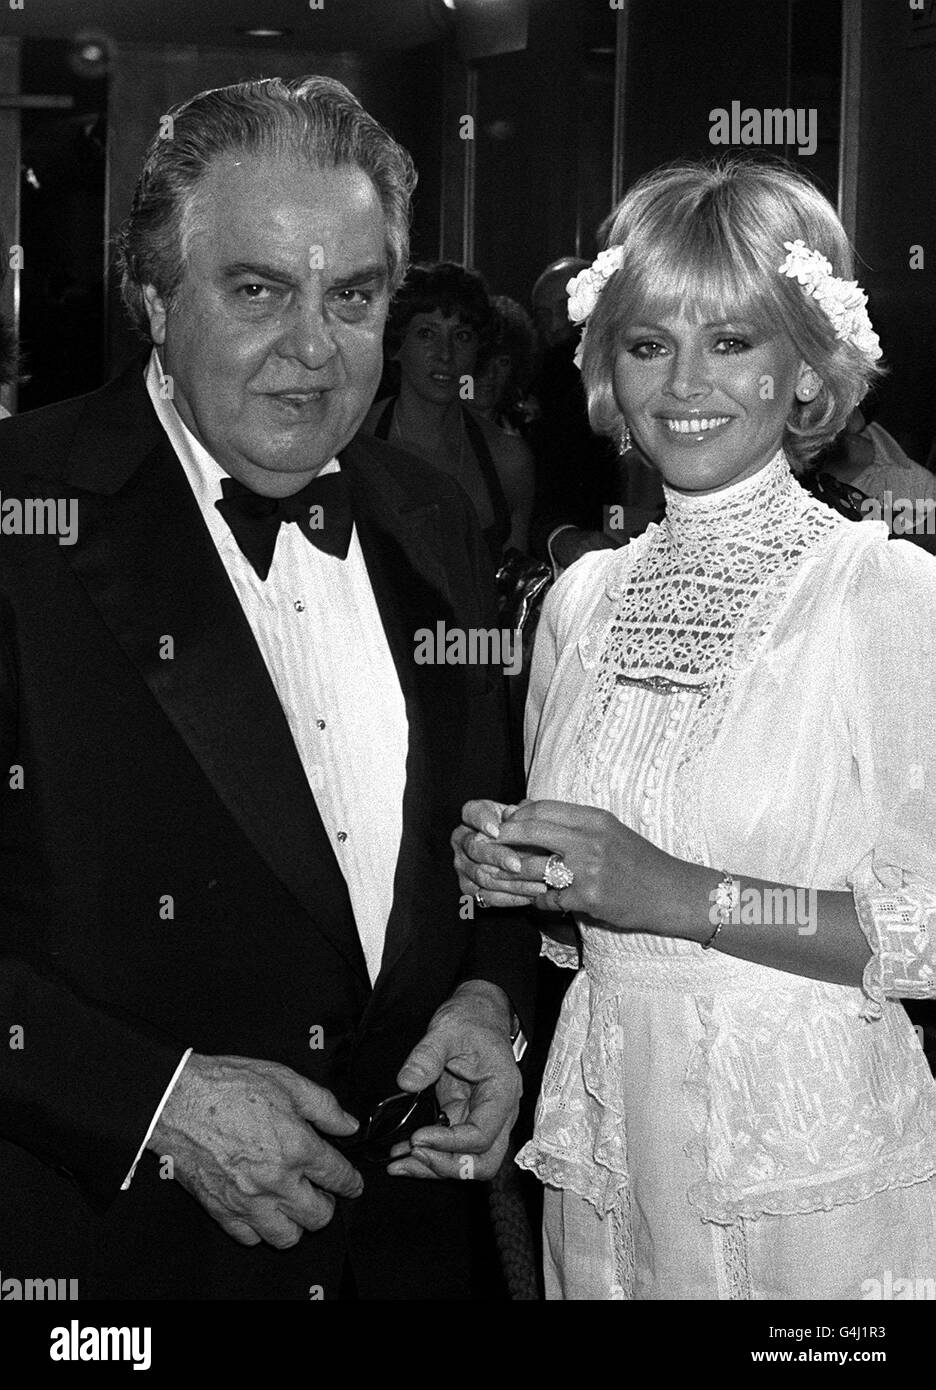 Le producteur de James Bond Albert Broccoli avec l'actrice Britt Ekland, qui covedette avec Roger Moore dans le nouveau film de James Bond, lors de la première de 'Moonraker'. Banque D'Images